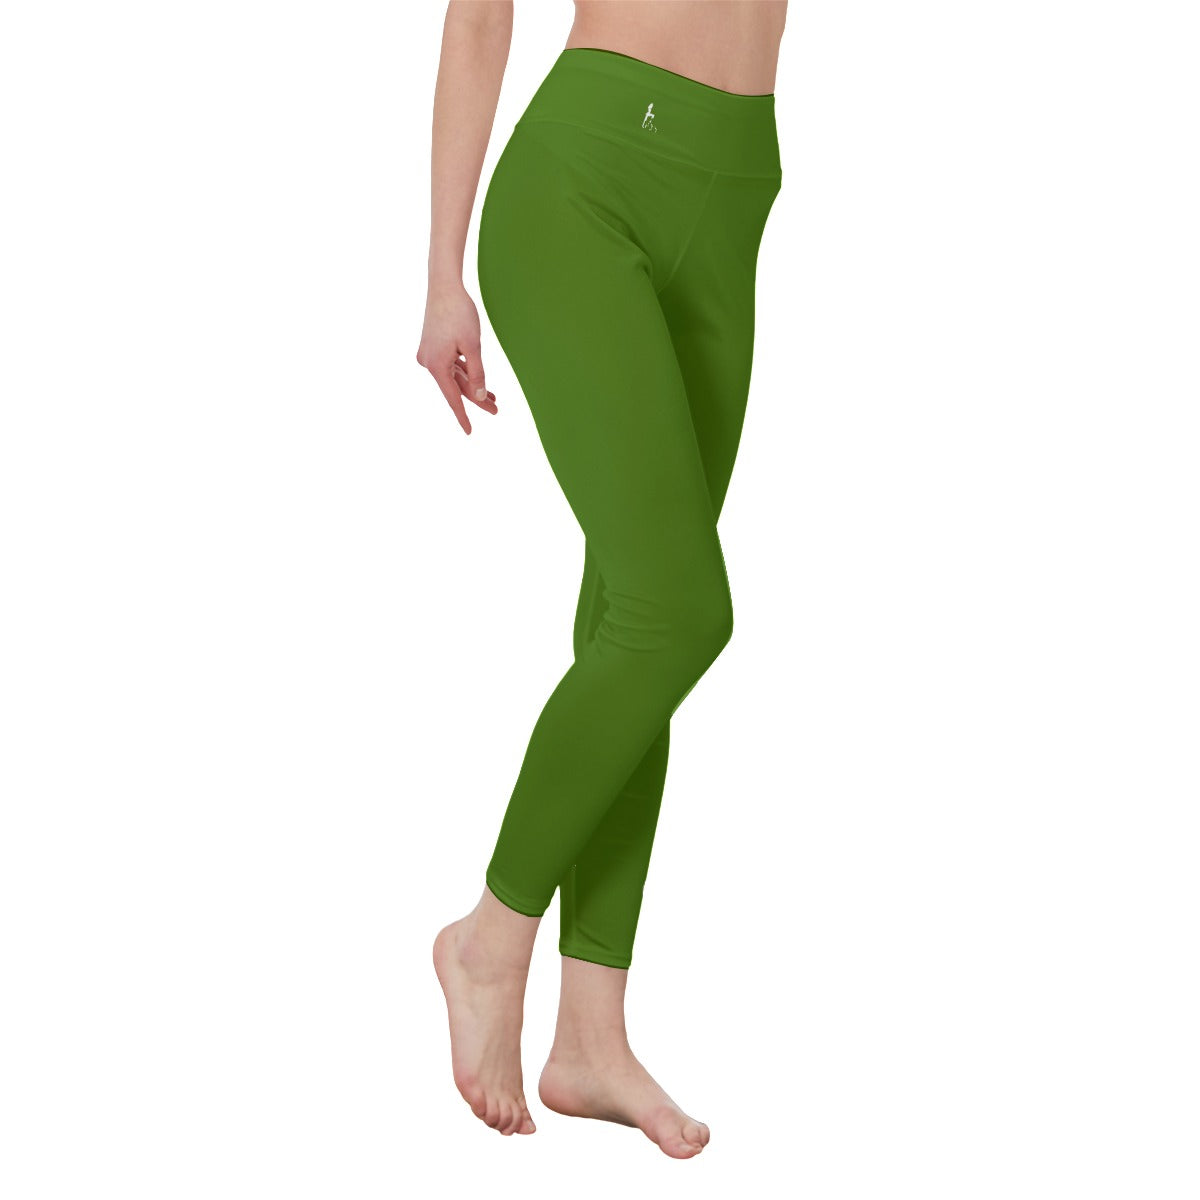 👖 Oficialmente Sexy Colors Collection Atlantis Green With White Logo Women's High Waist Leggings Color #417505 👖